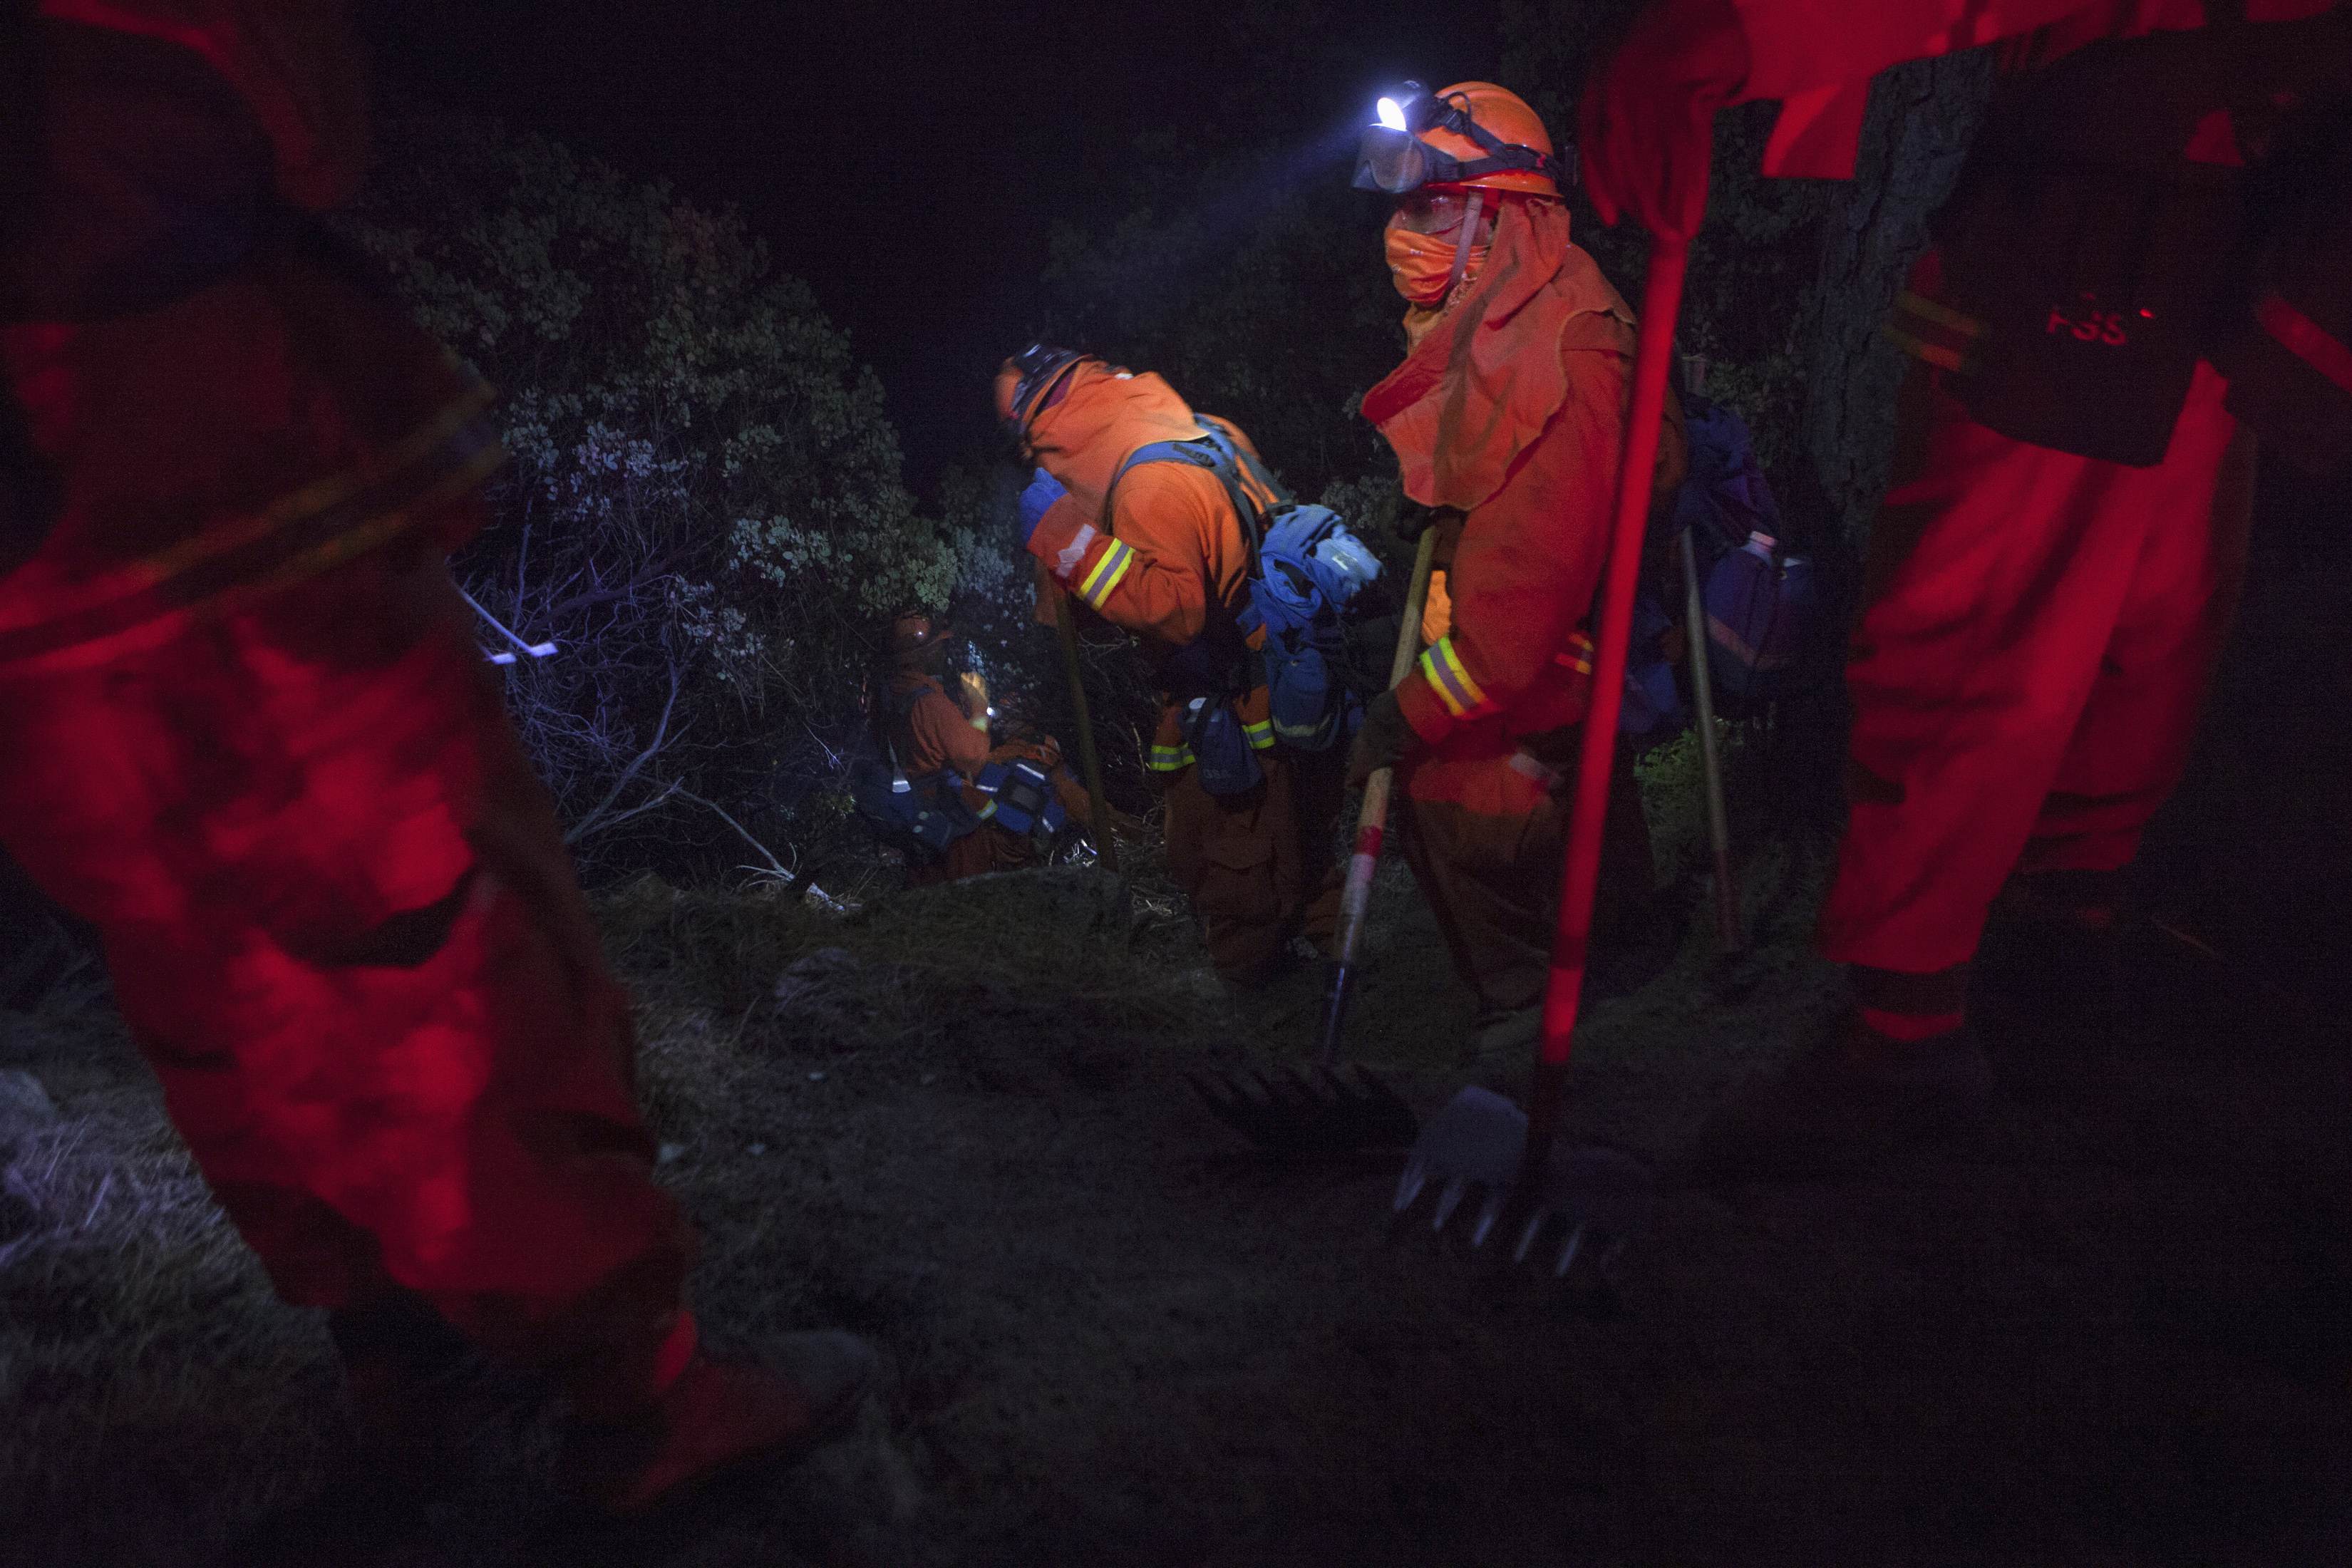 Μέρα νύχτα προσπαθούν οι πυροσβέστες να σβήσουν την καταστροφική φωτιά - ΦΩΤΟΓΡΑΦΙΑ REUTERS